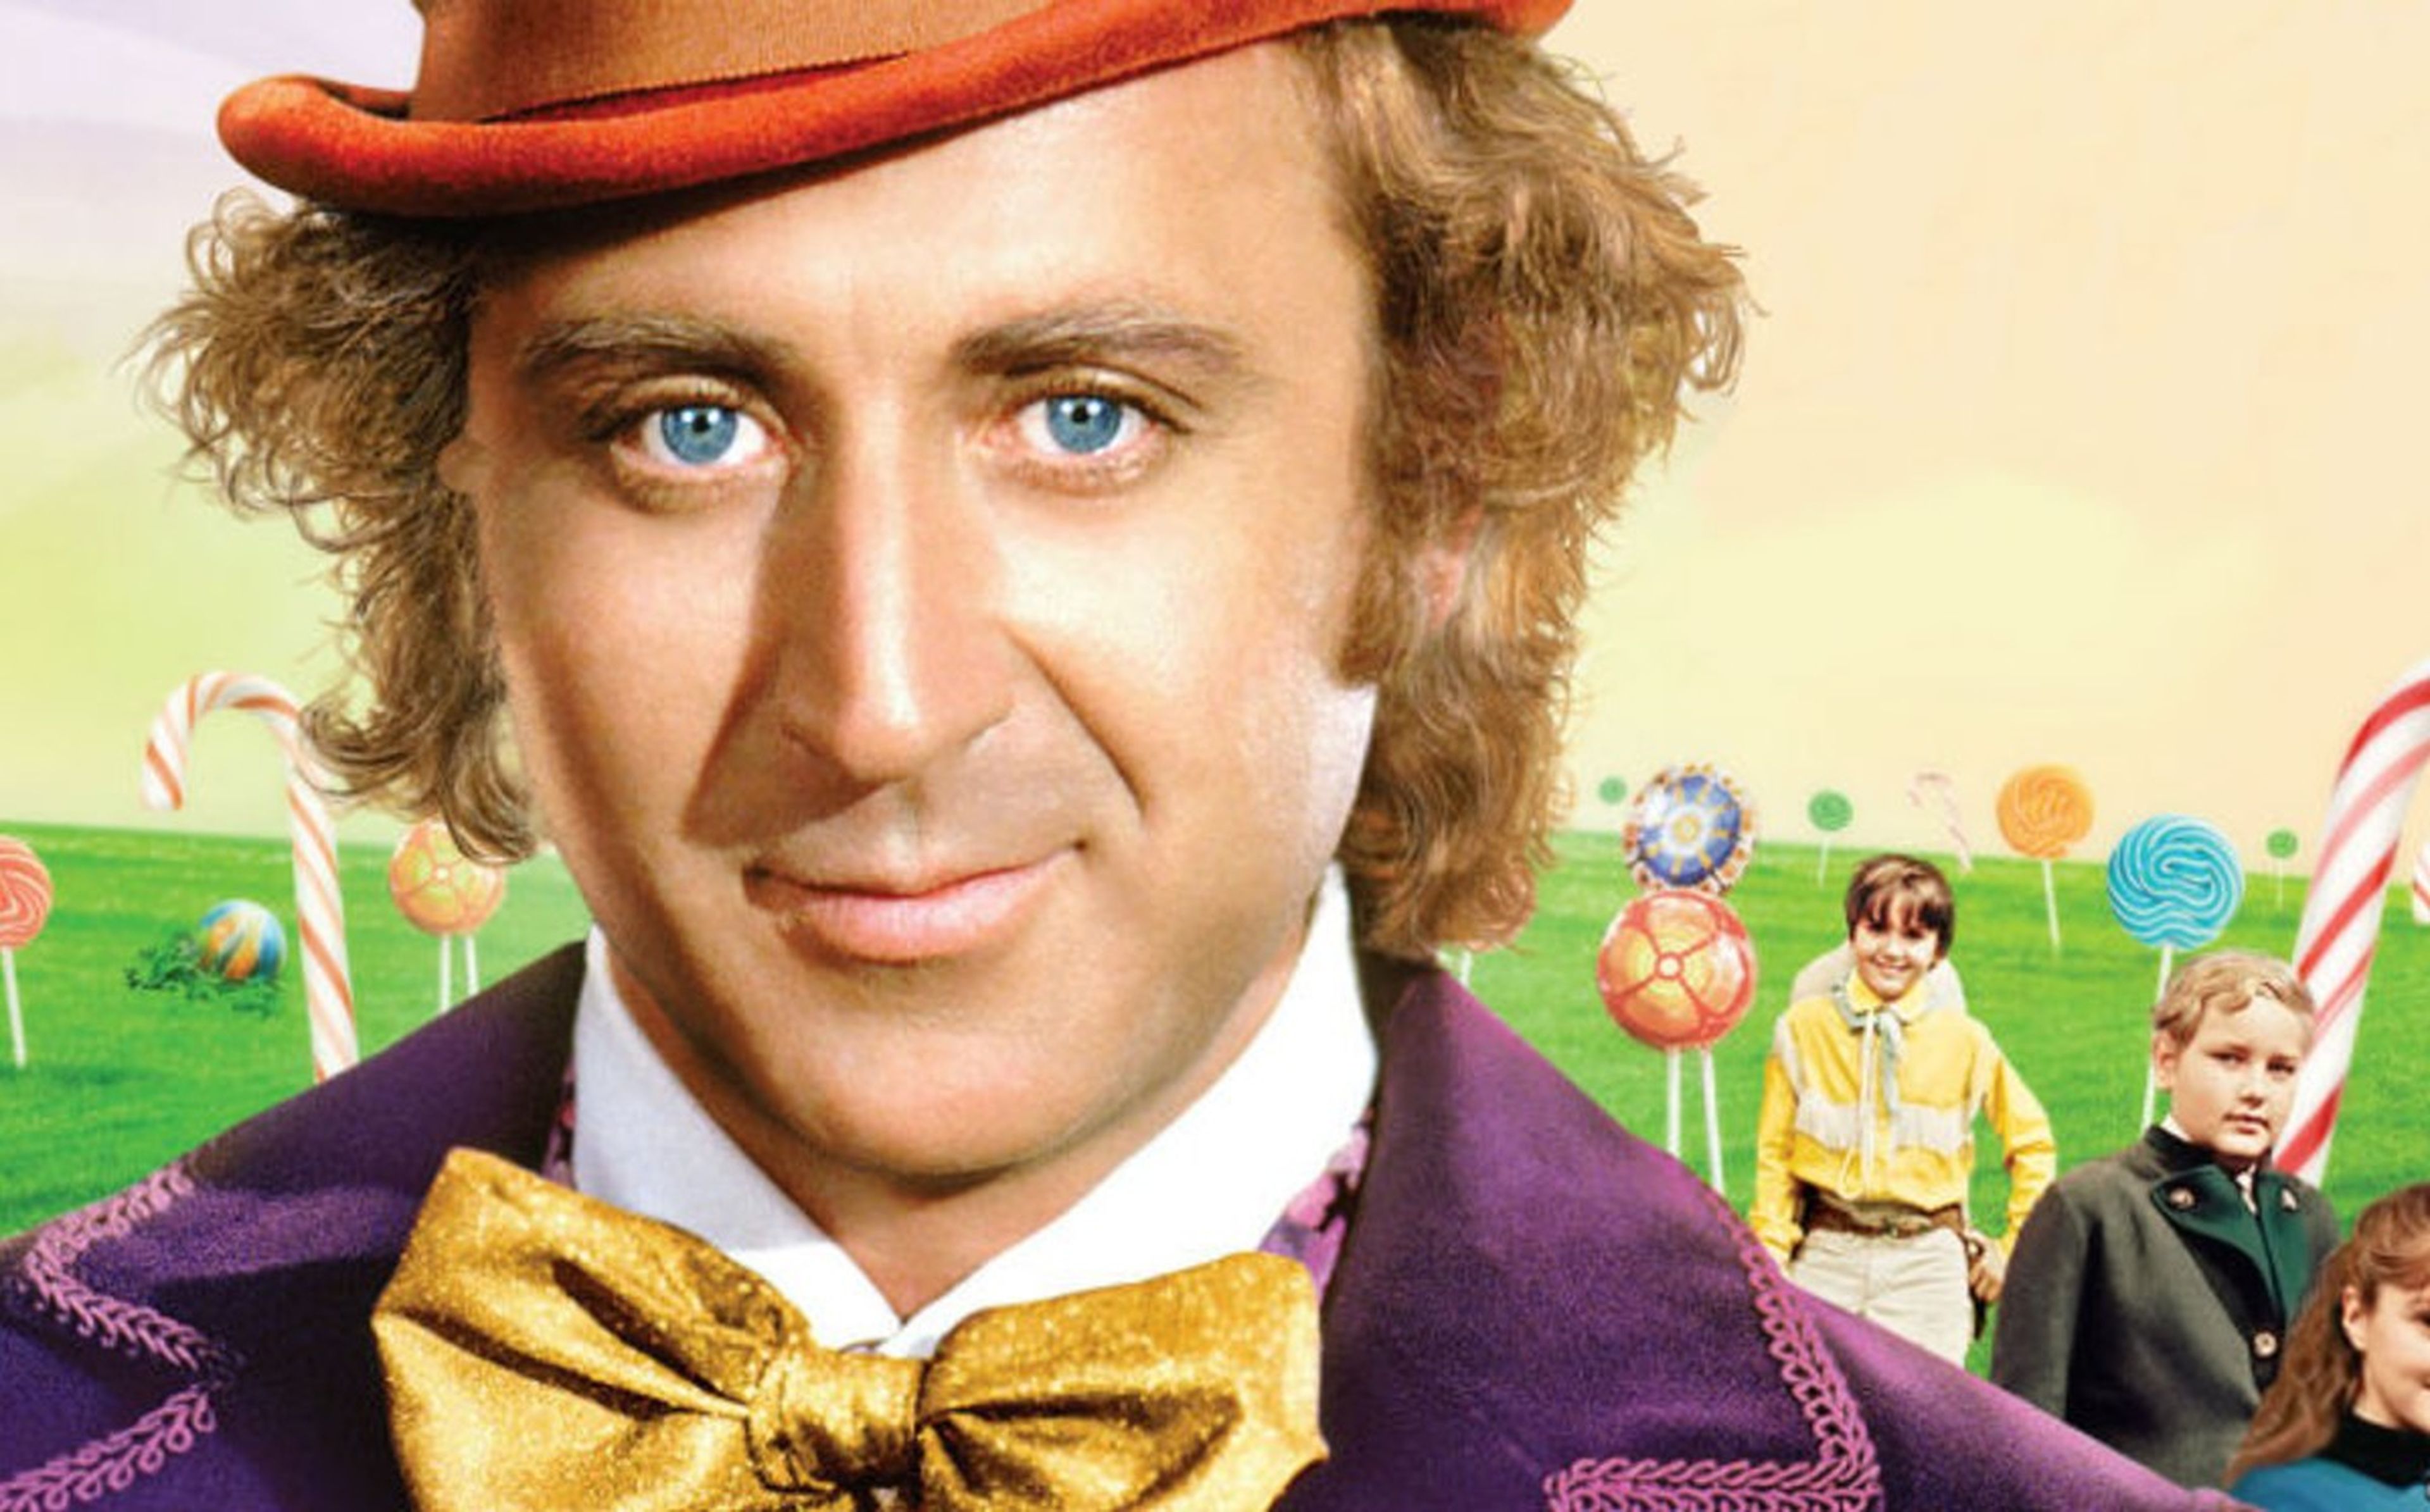 Willy Wonka y la fábrica de chocolate (Un mundo de fantasía)